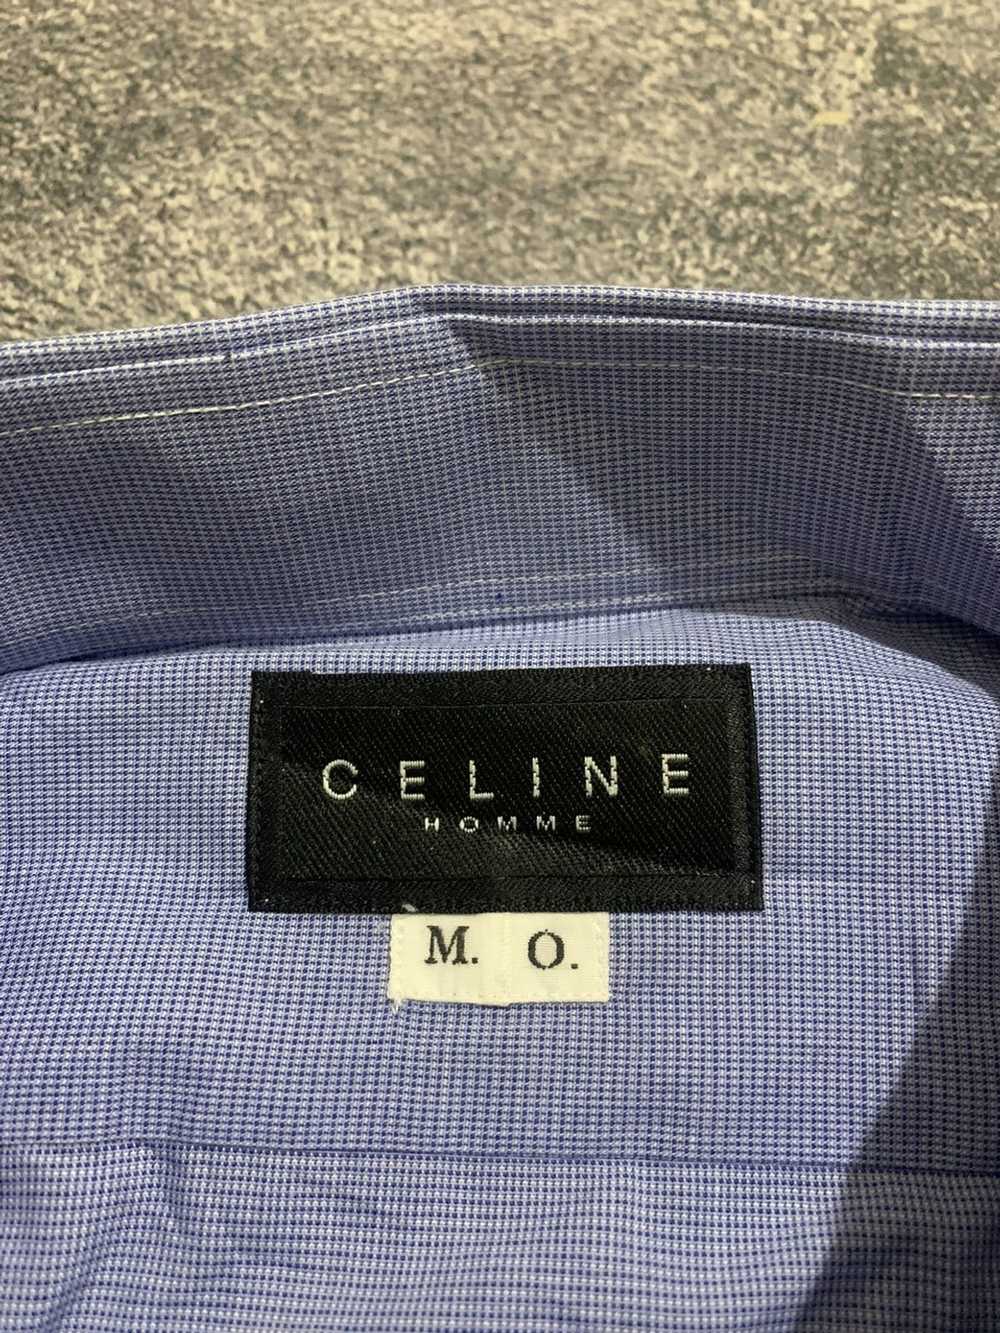 Celine Celine Homme Slimfit Shirt - image 3